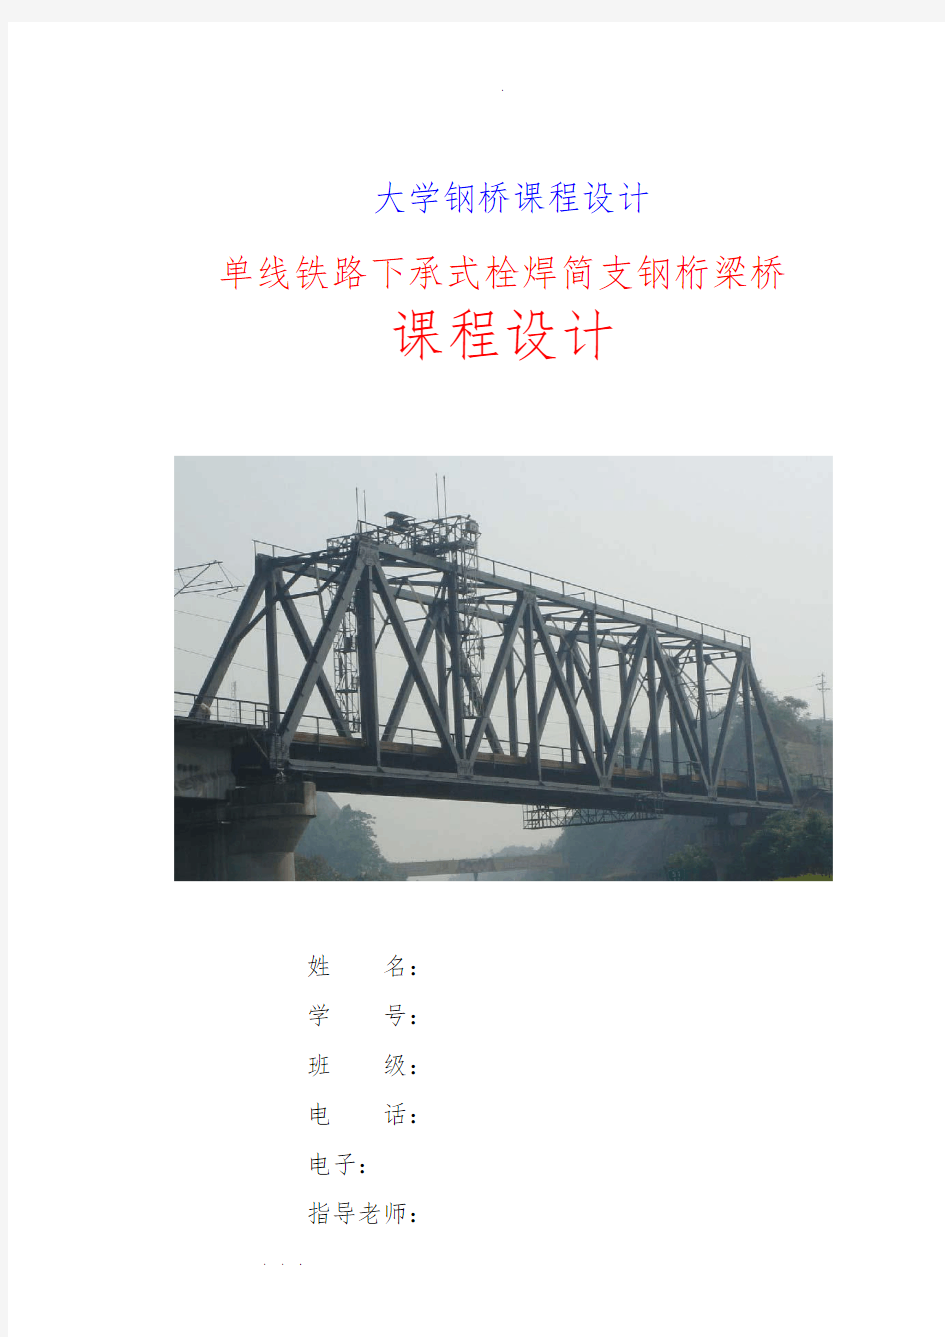 单线铁路下承式栓焊简支钢桁梁桥课程设计报告书